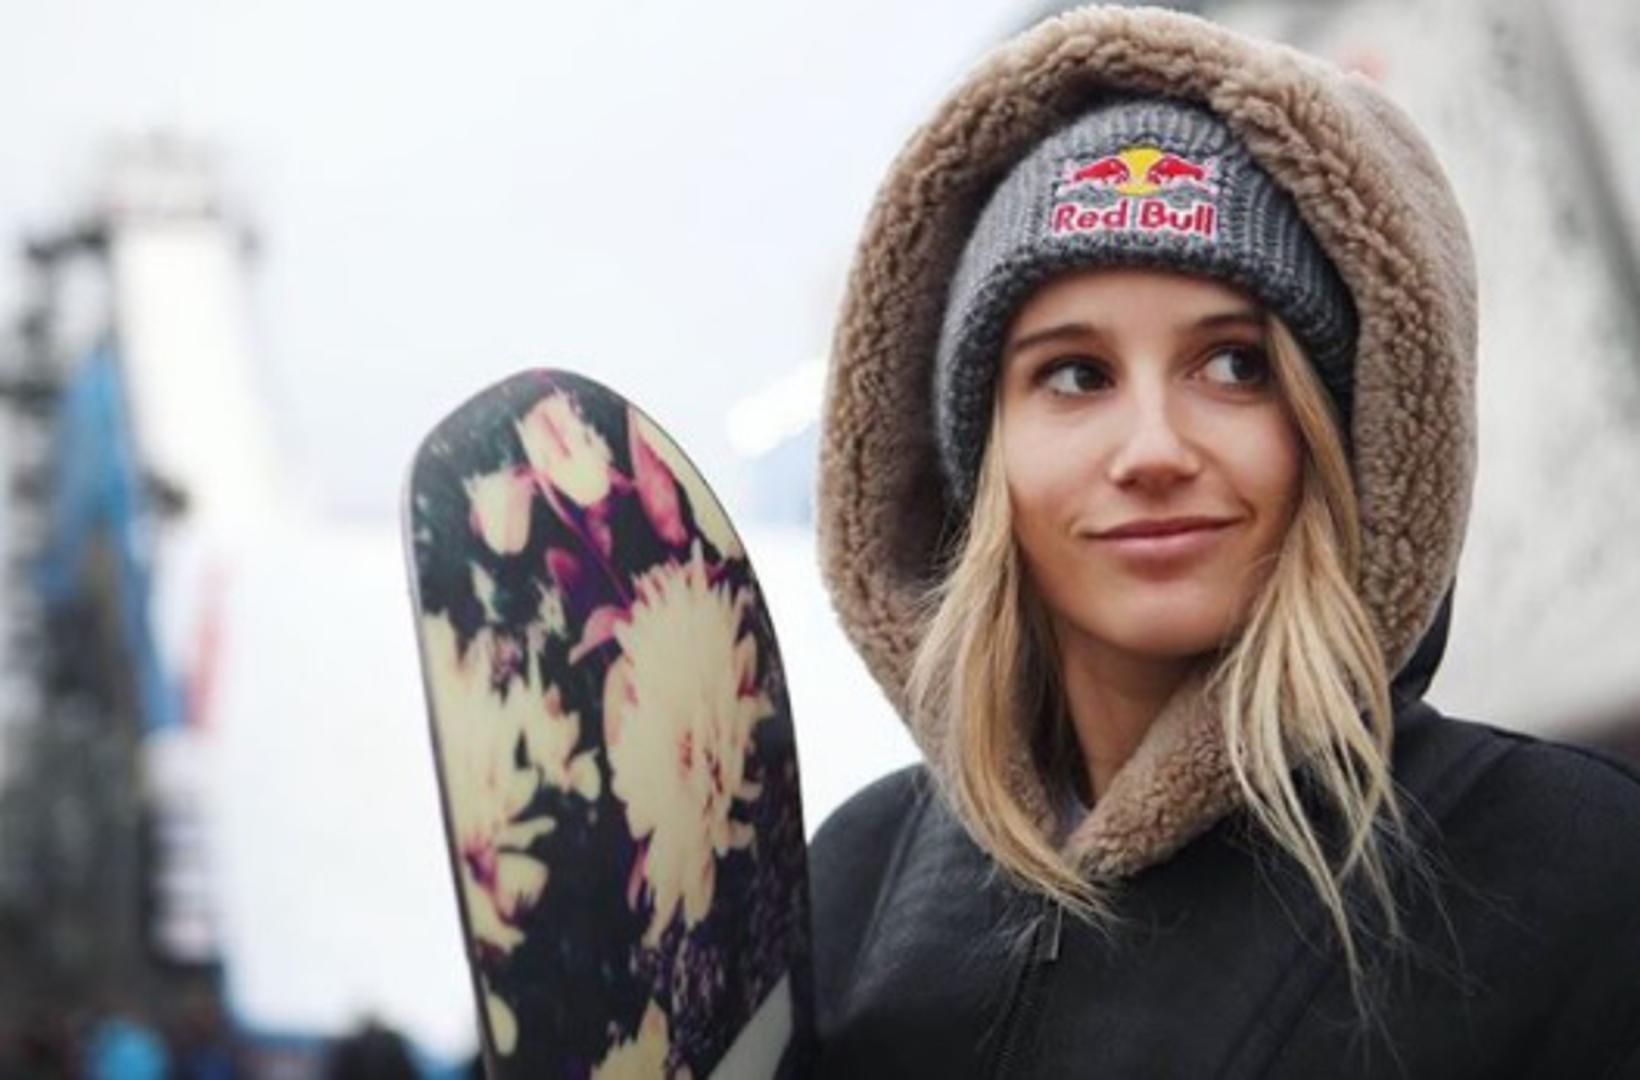 Austrijanka Anna Gasser (26) natječe se u slopestyleu i big airu. Uvijek je u vrhu i jedna je od favoritkinja za odličja na Igrama u Pjongčangu.